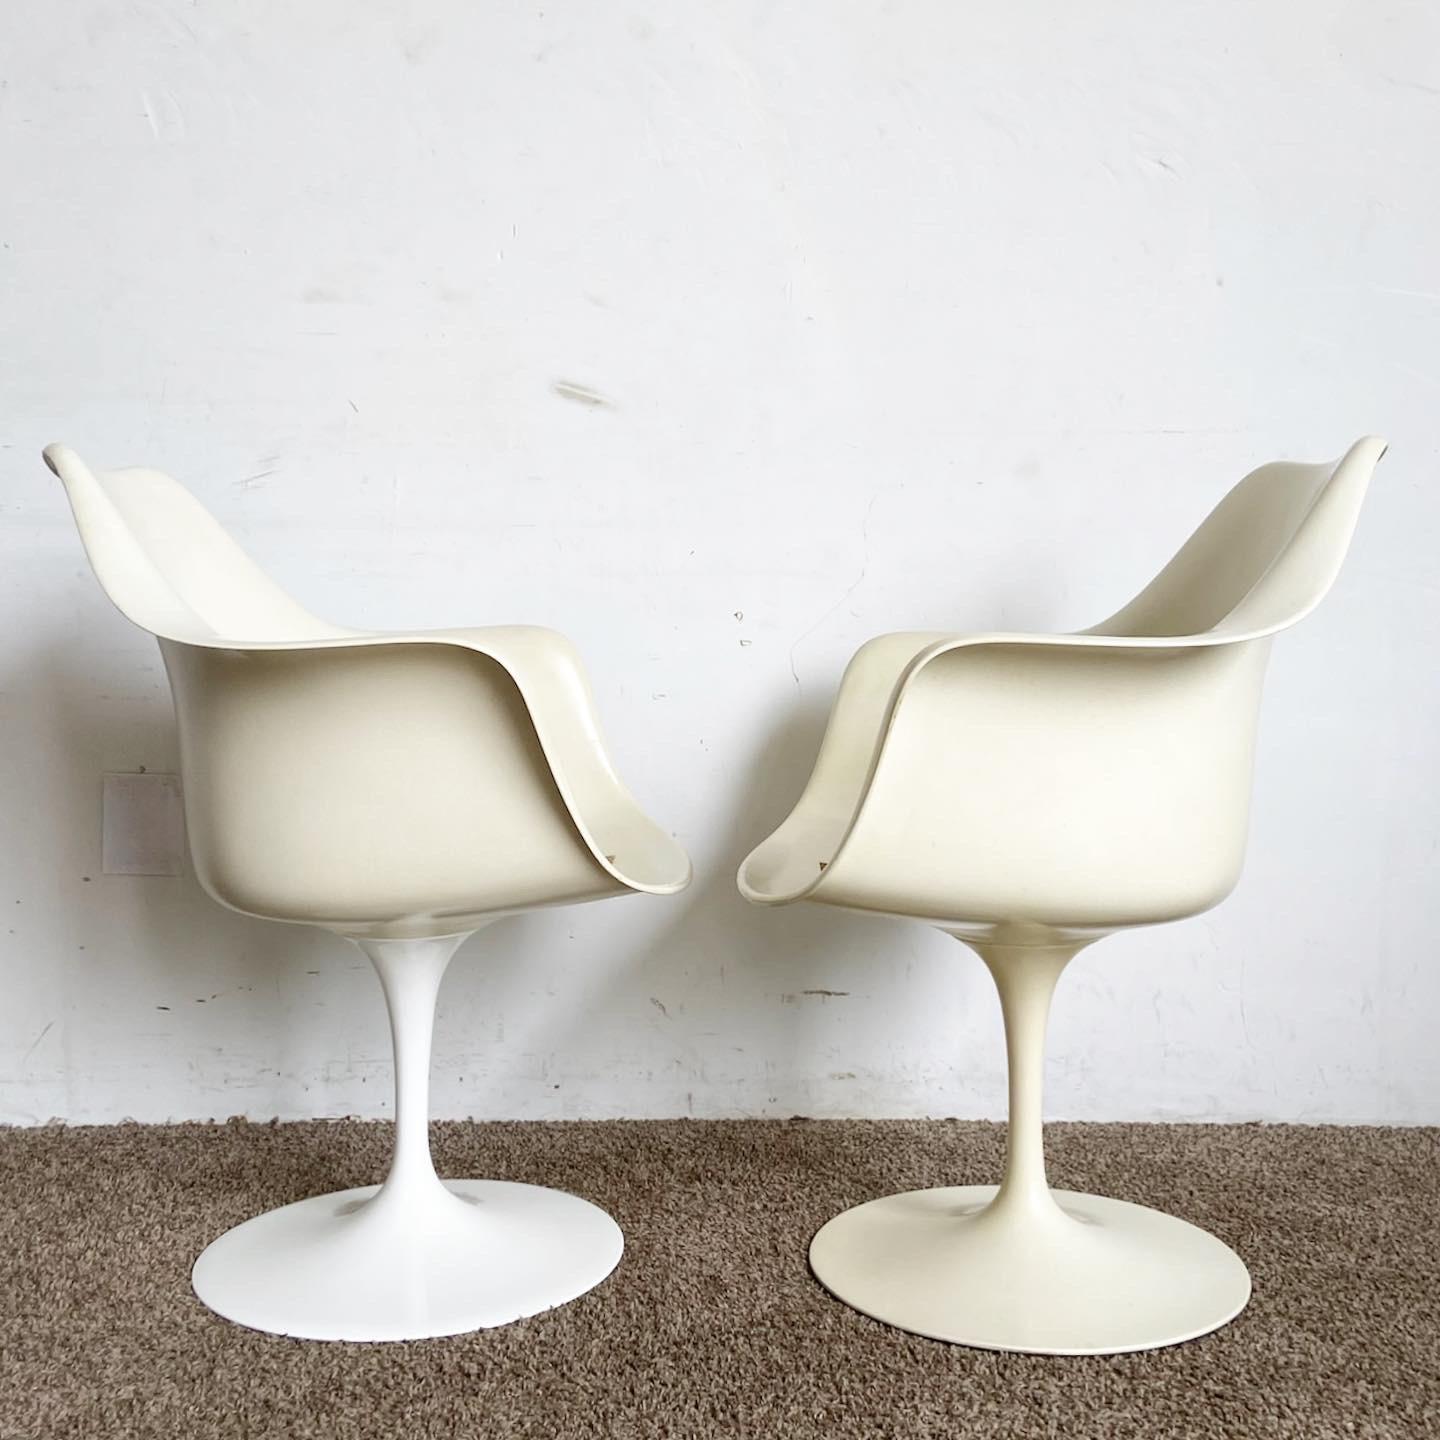 Les chaises de salle à manger Tulip BR50 de Knoll sont des chaises de salle à manger de style moderne du milieu du siècle. Un mélange de forme, de fonction et de design intemporel.
L'une des bases a été remplacée par une plus récente. Il apparaît un